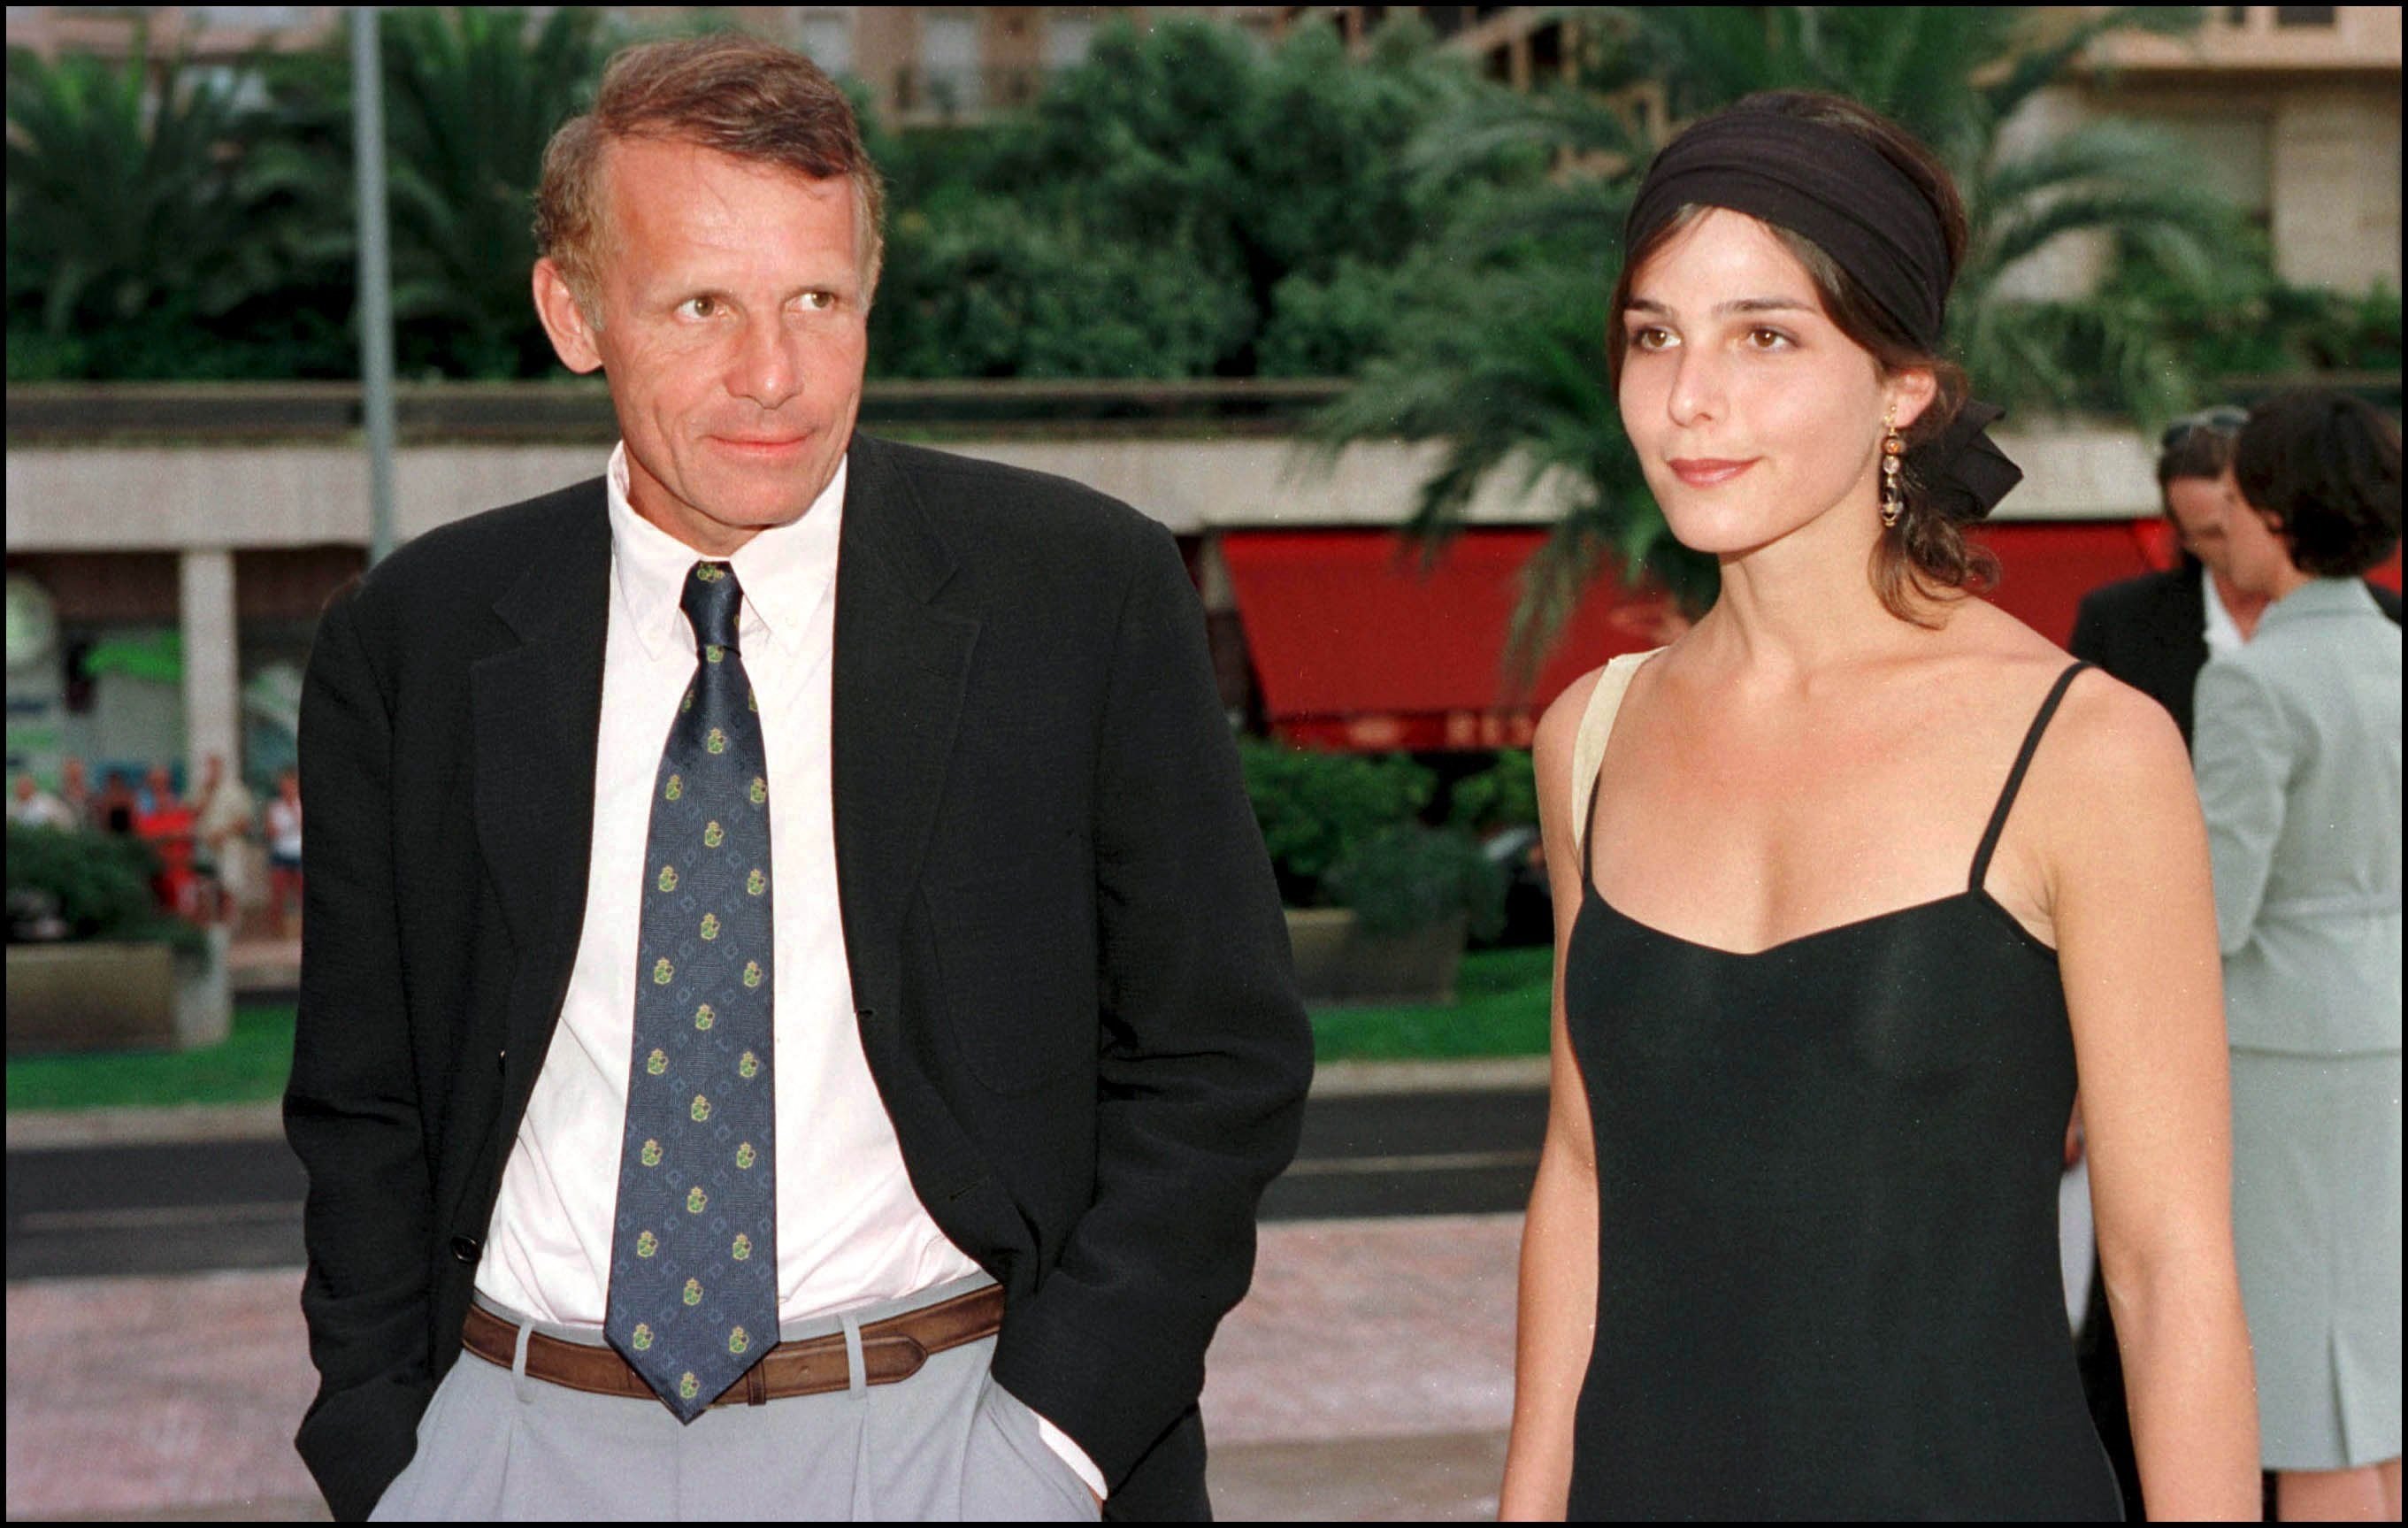 Patrick Poivre D'arvor et Claire lors de l'inauguration du Grimaldi Forum à Monaco City, Monaco, le 20 juillet 2000. | Photo : Getty Images